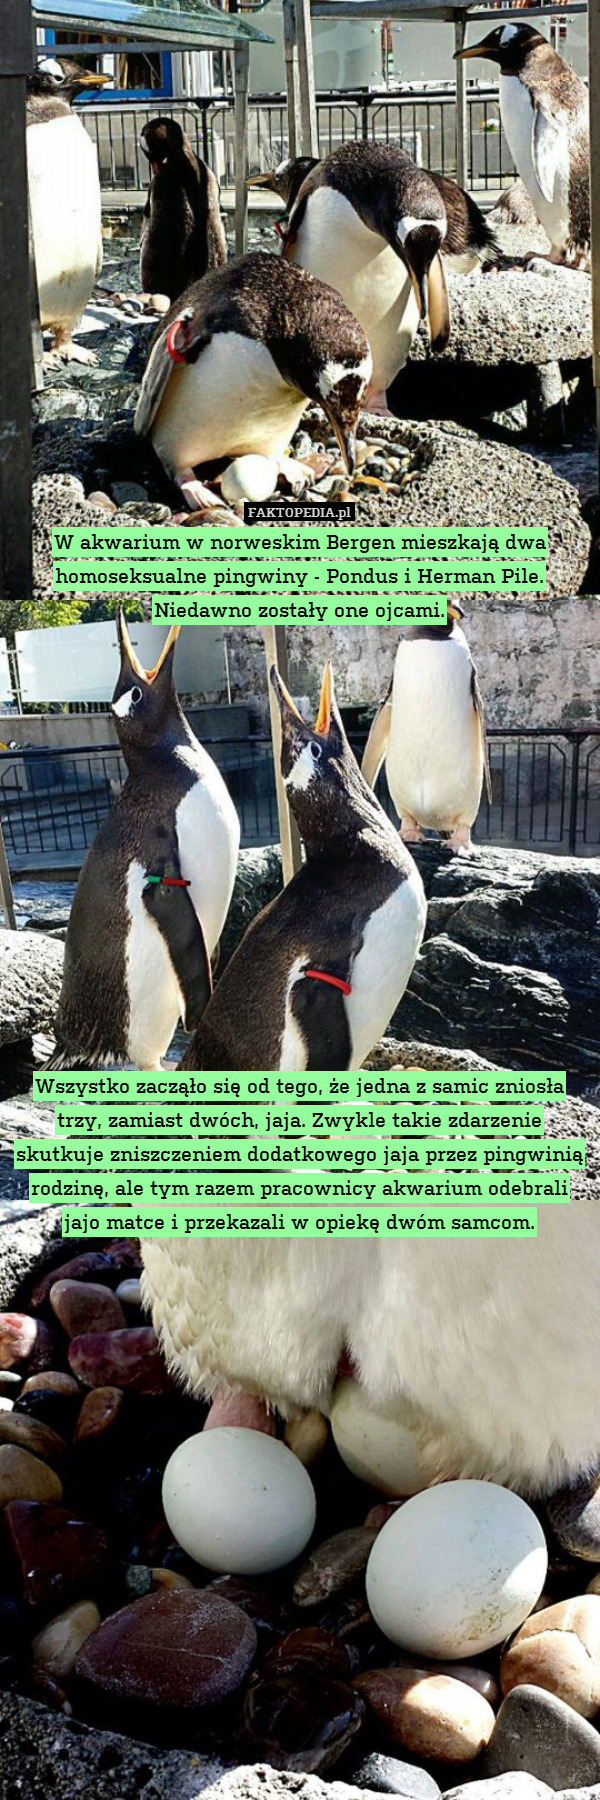 W akwarium w norweskim Bergen mieszkają dwa homoseksualne pingwiny - Pondus i Herman Pile. Niedawno zostały one ojcami.













Wszystko zacząło się od tego, że jedna z samic zniosła trzy, zamiast dwóch, jaja. Zwykle takie zdarzenie skutkuje zniszczeniem dodatkowego jaja przez pingwinią rodzinę, ale tym razem pracownicy akwarium odebrali jajo matce i przekazali w opiekę dwóm samcom. 